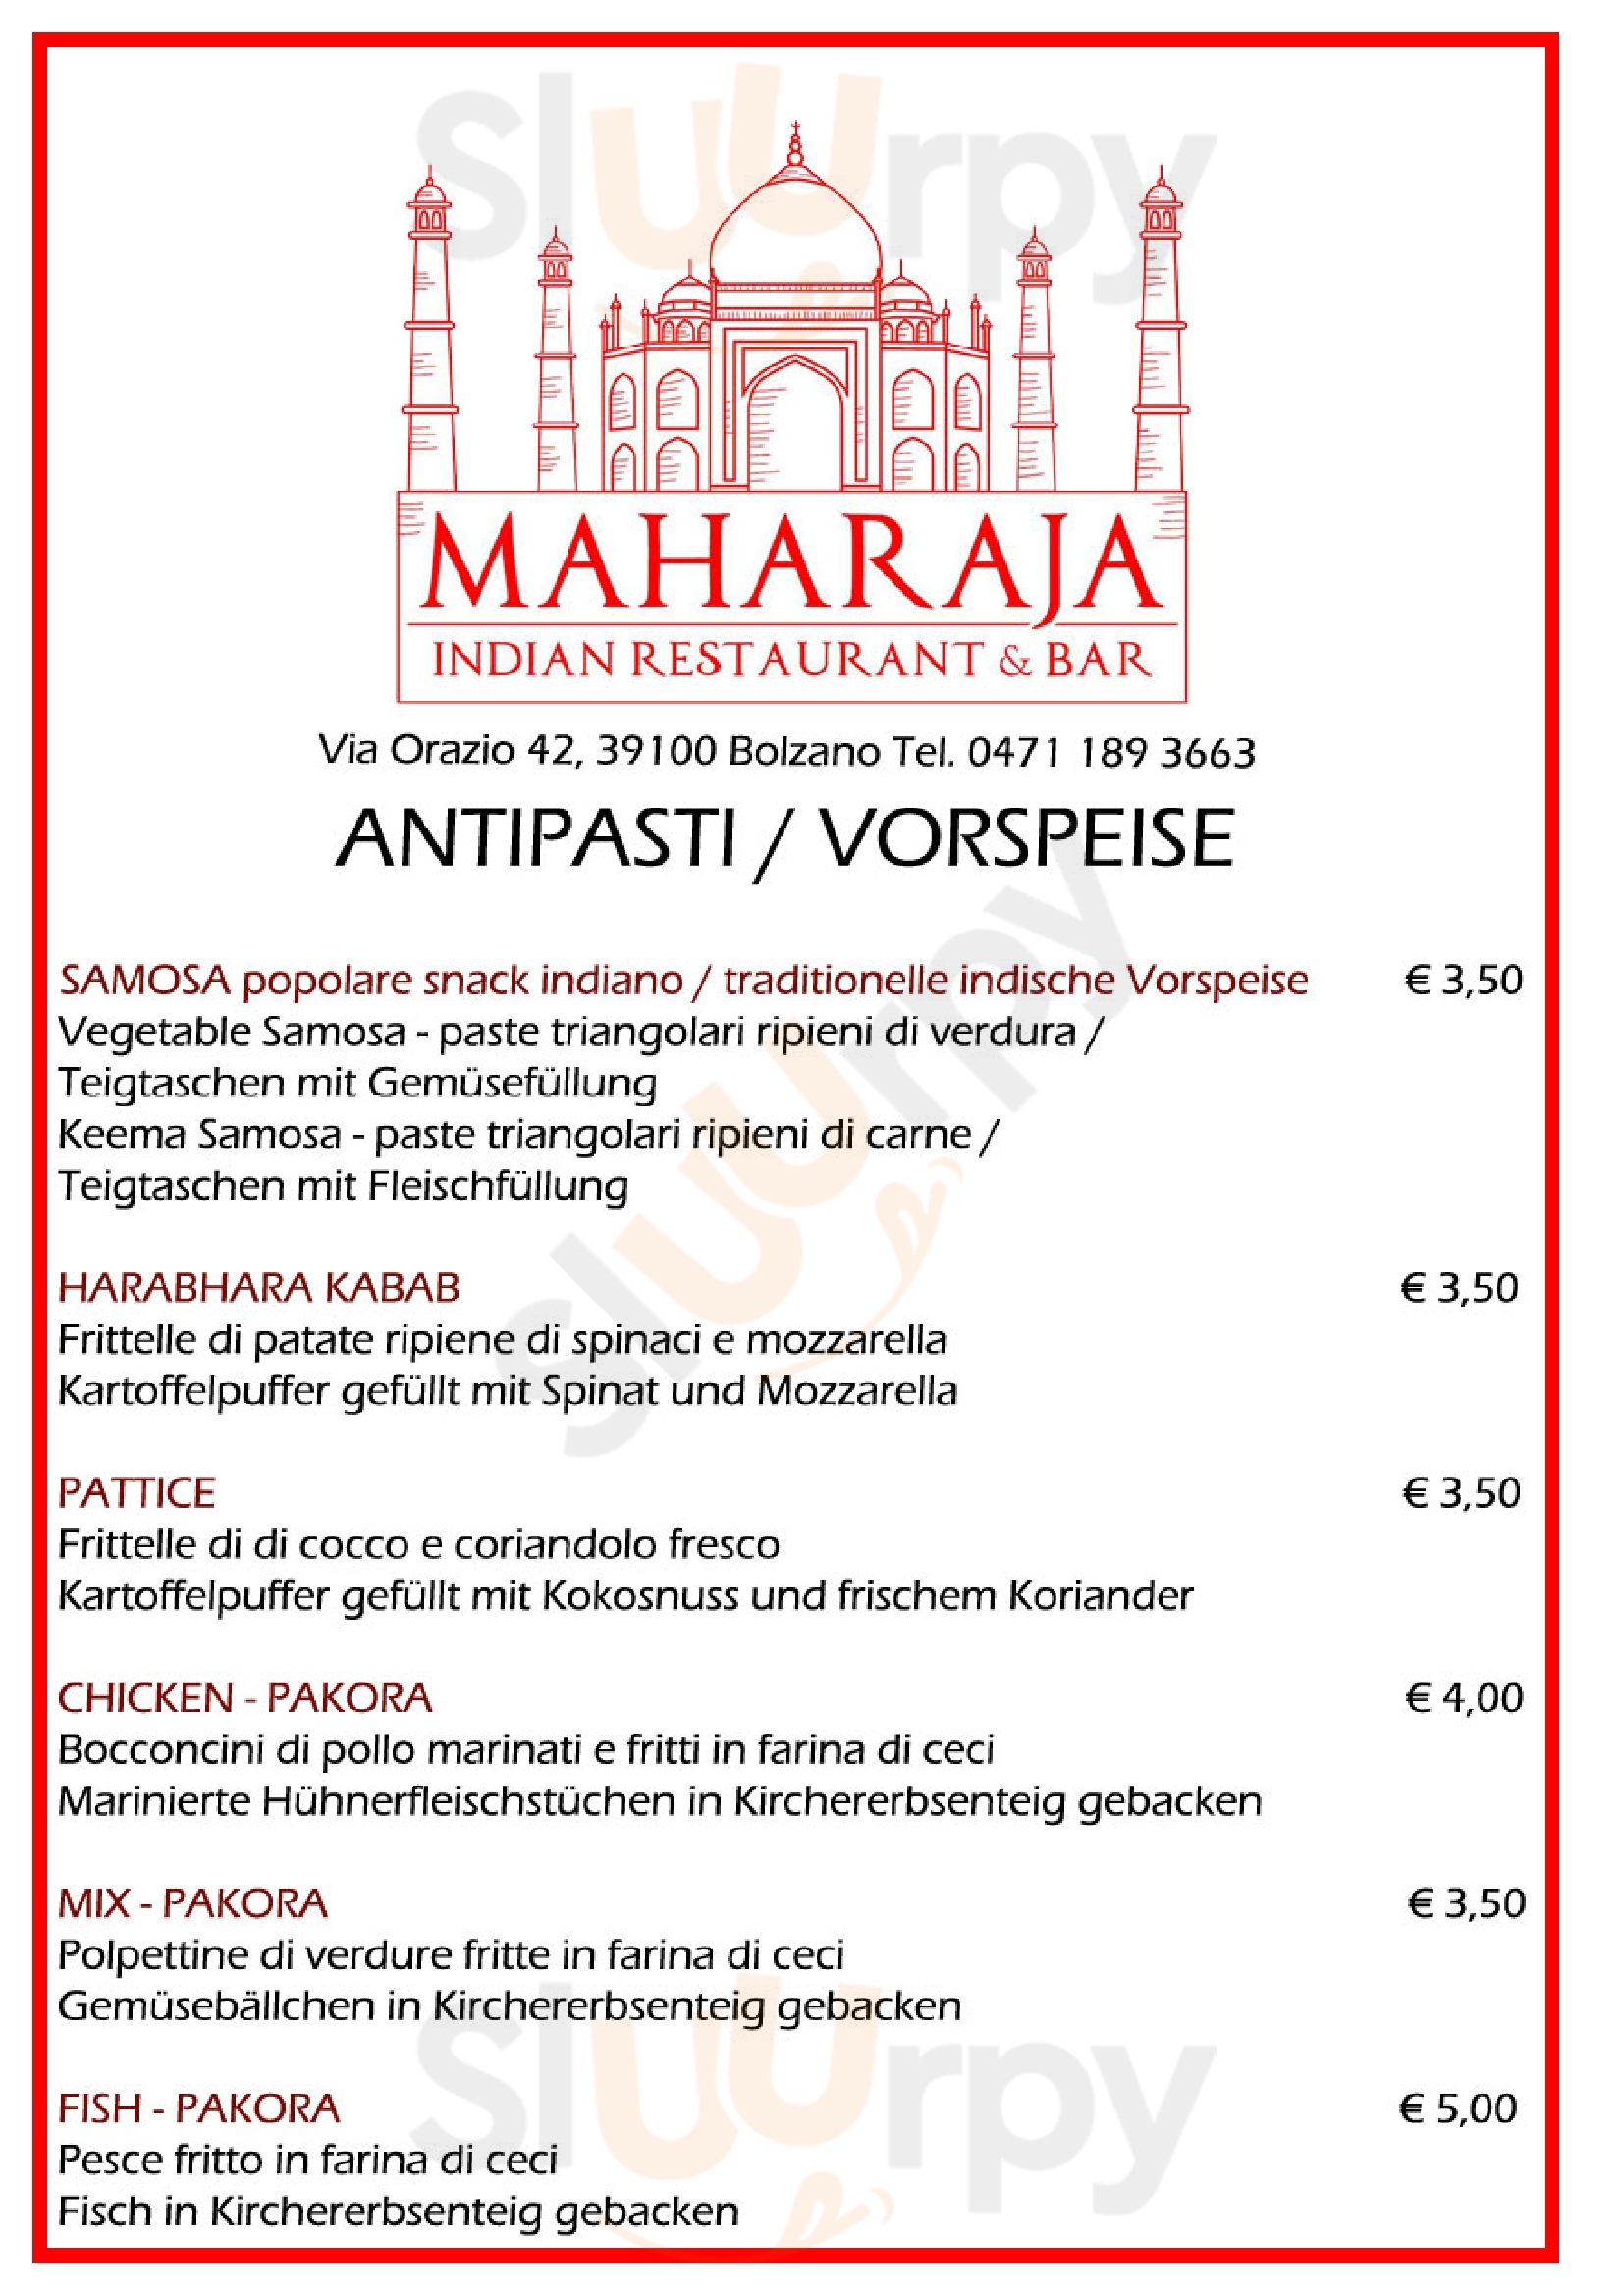 Maharaja Indian Restaurant & Bar Bolzano menù 1 pagina